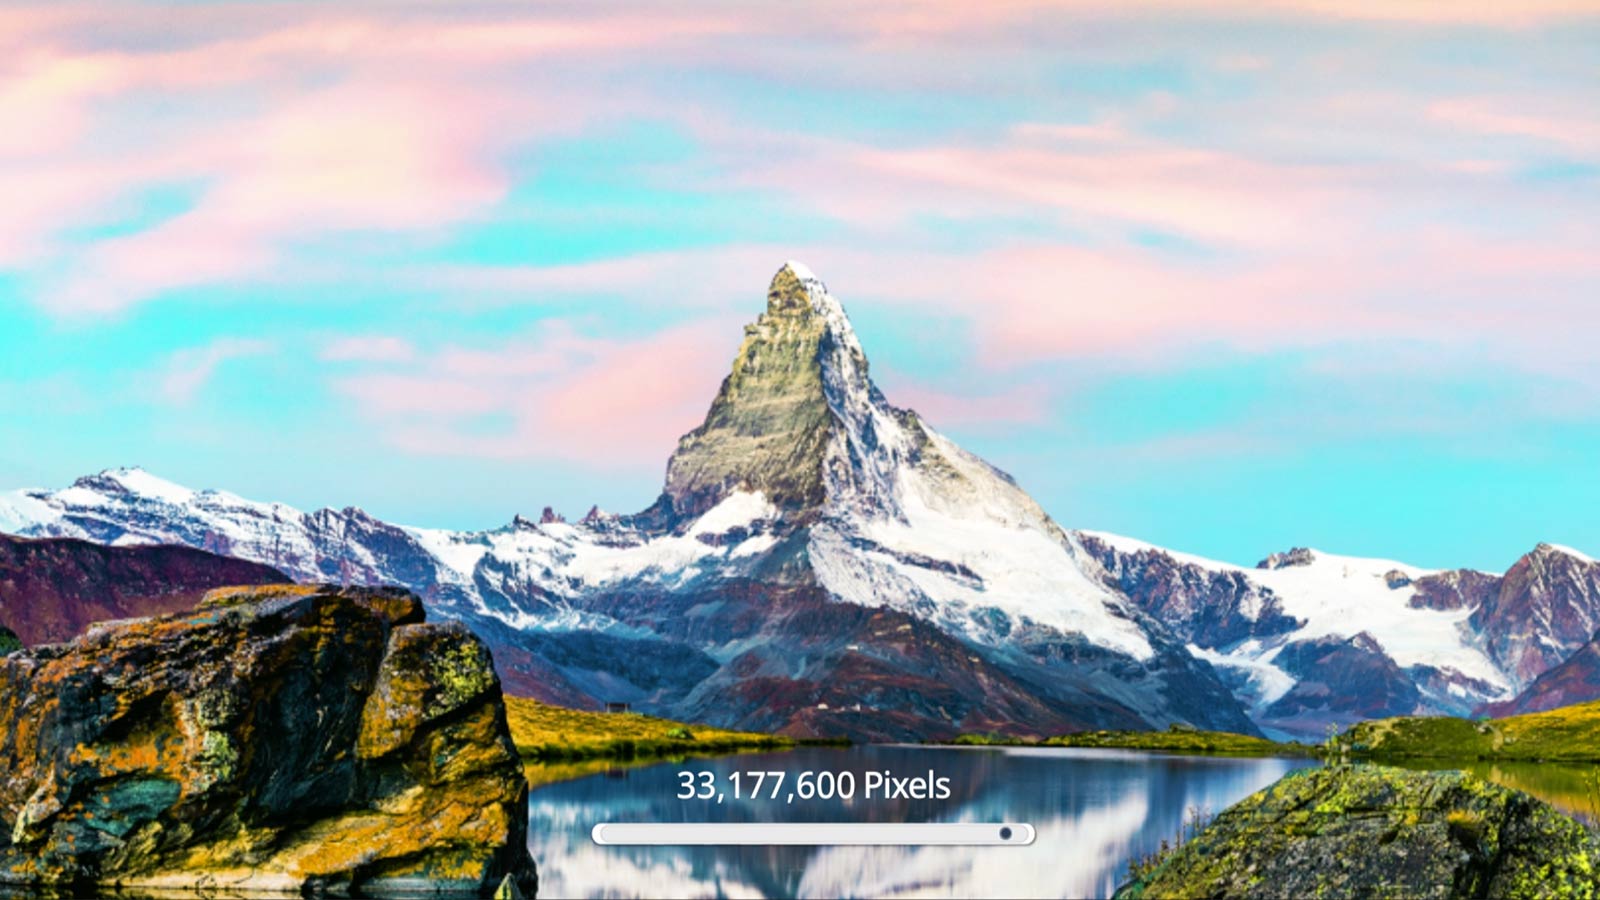 Σκηνή ενός βουνού όπου φαίνεται η βελτίωση στην ποιότητα της εικόνας, καθώς ο αριθμός των pixel αυξάνεται στα 33.177.600 σε ανάλυση 8K (αναπαραγωγή βίντεο).